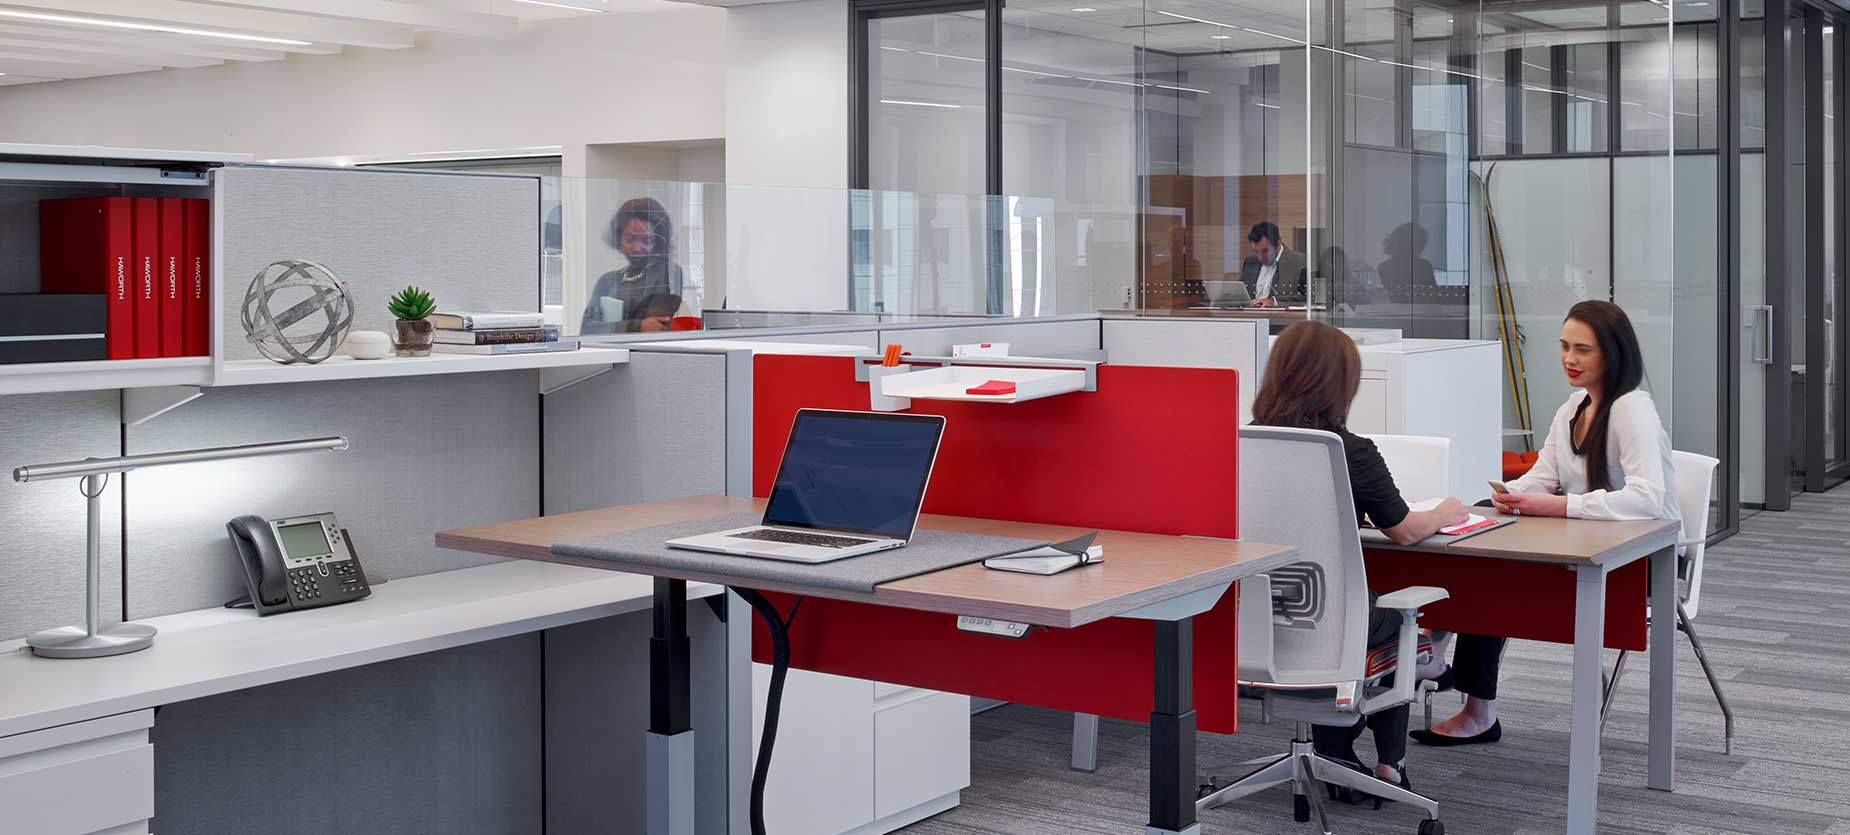 配备了高度可调节办公桌，该展厅凸显了办公空间内移动和灵活的重要性。